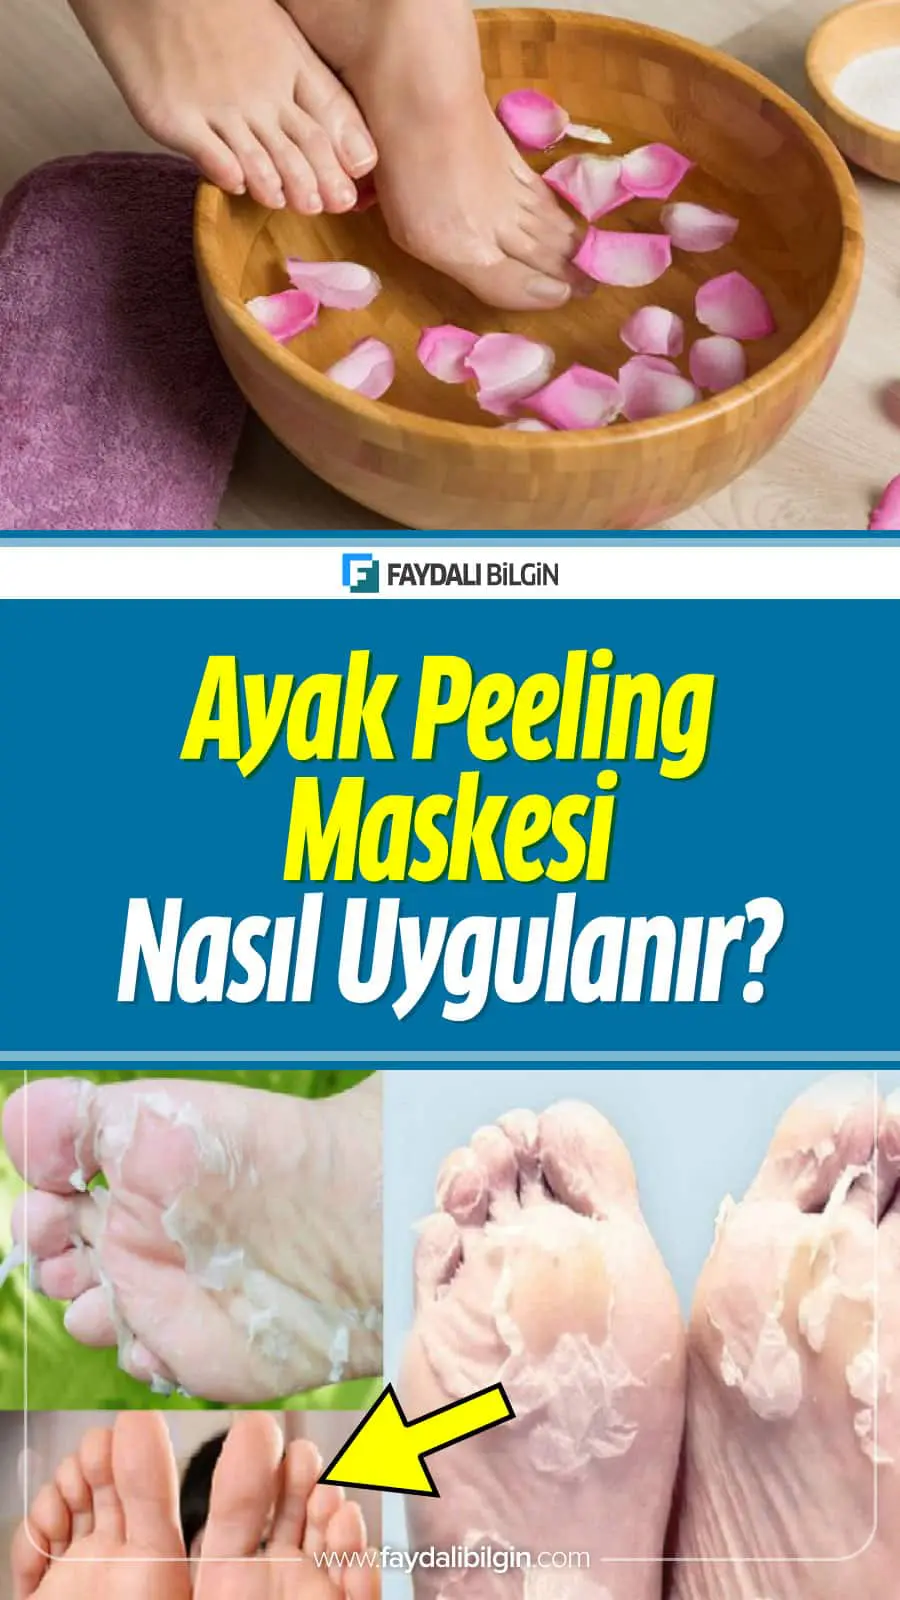 Ayak Peeling Maskesi Nasıl Uygulanır?